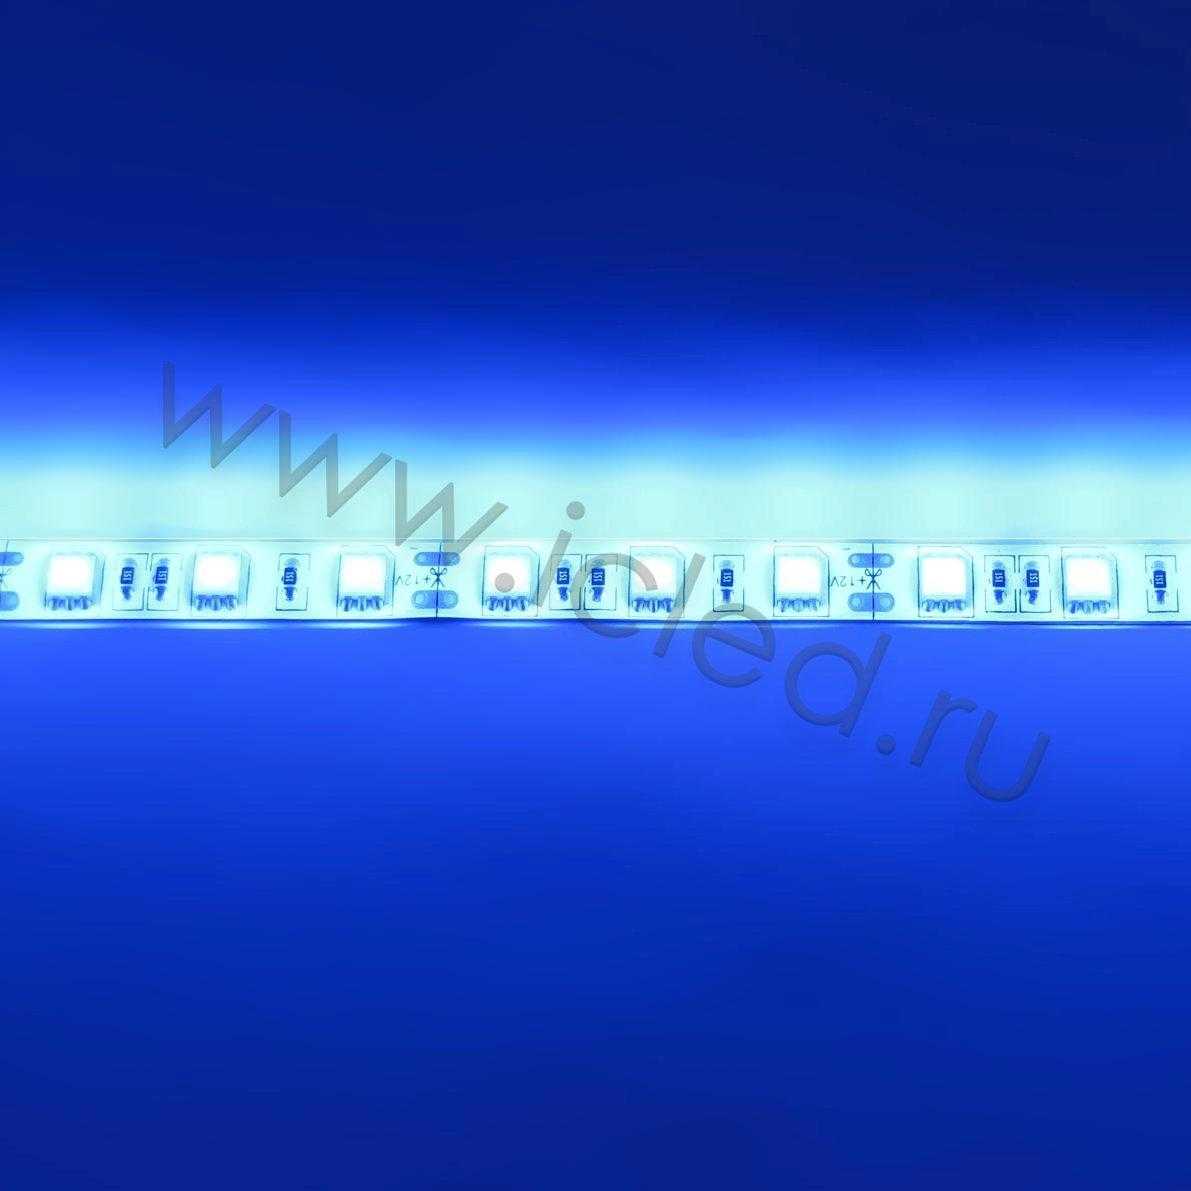 Влагозащищенные светодиодные ленты Светодиодная лента Standart class, 5050, 60led/m, Blue, 12V, IP65 Icled